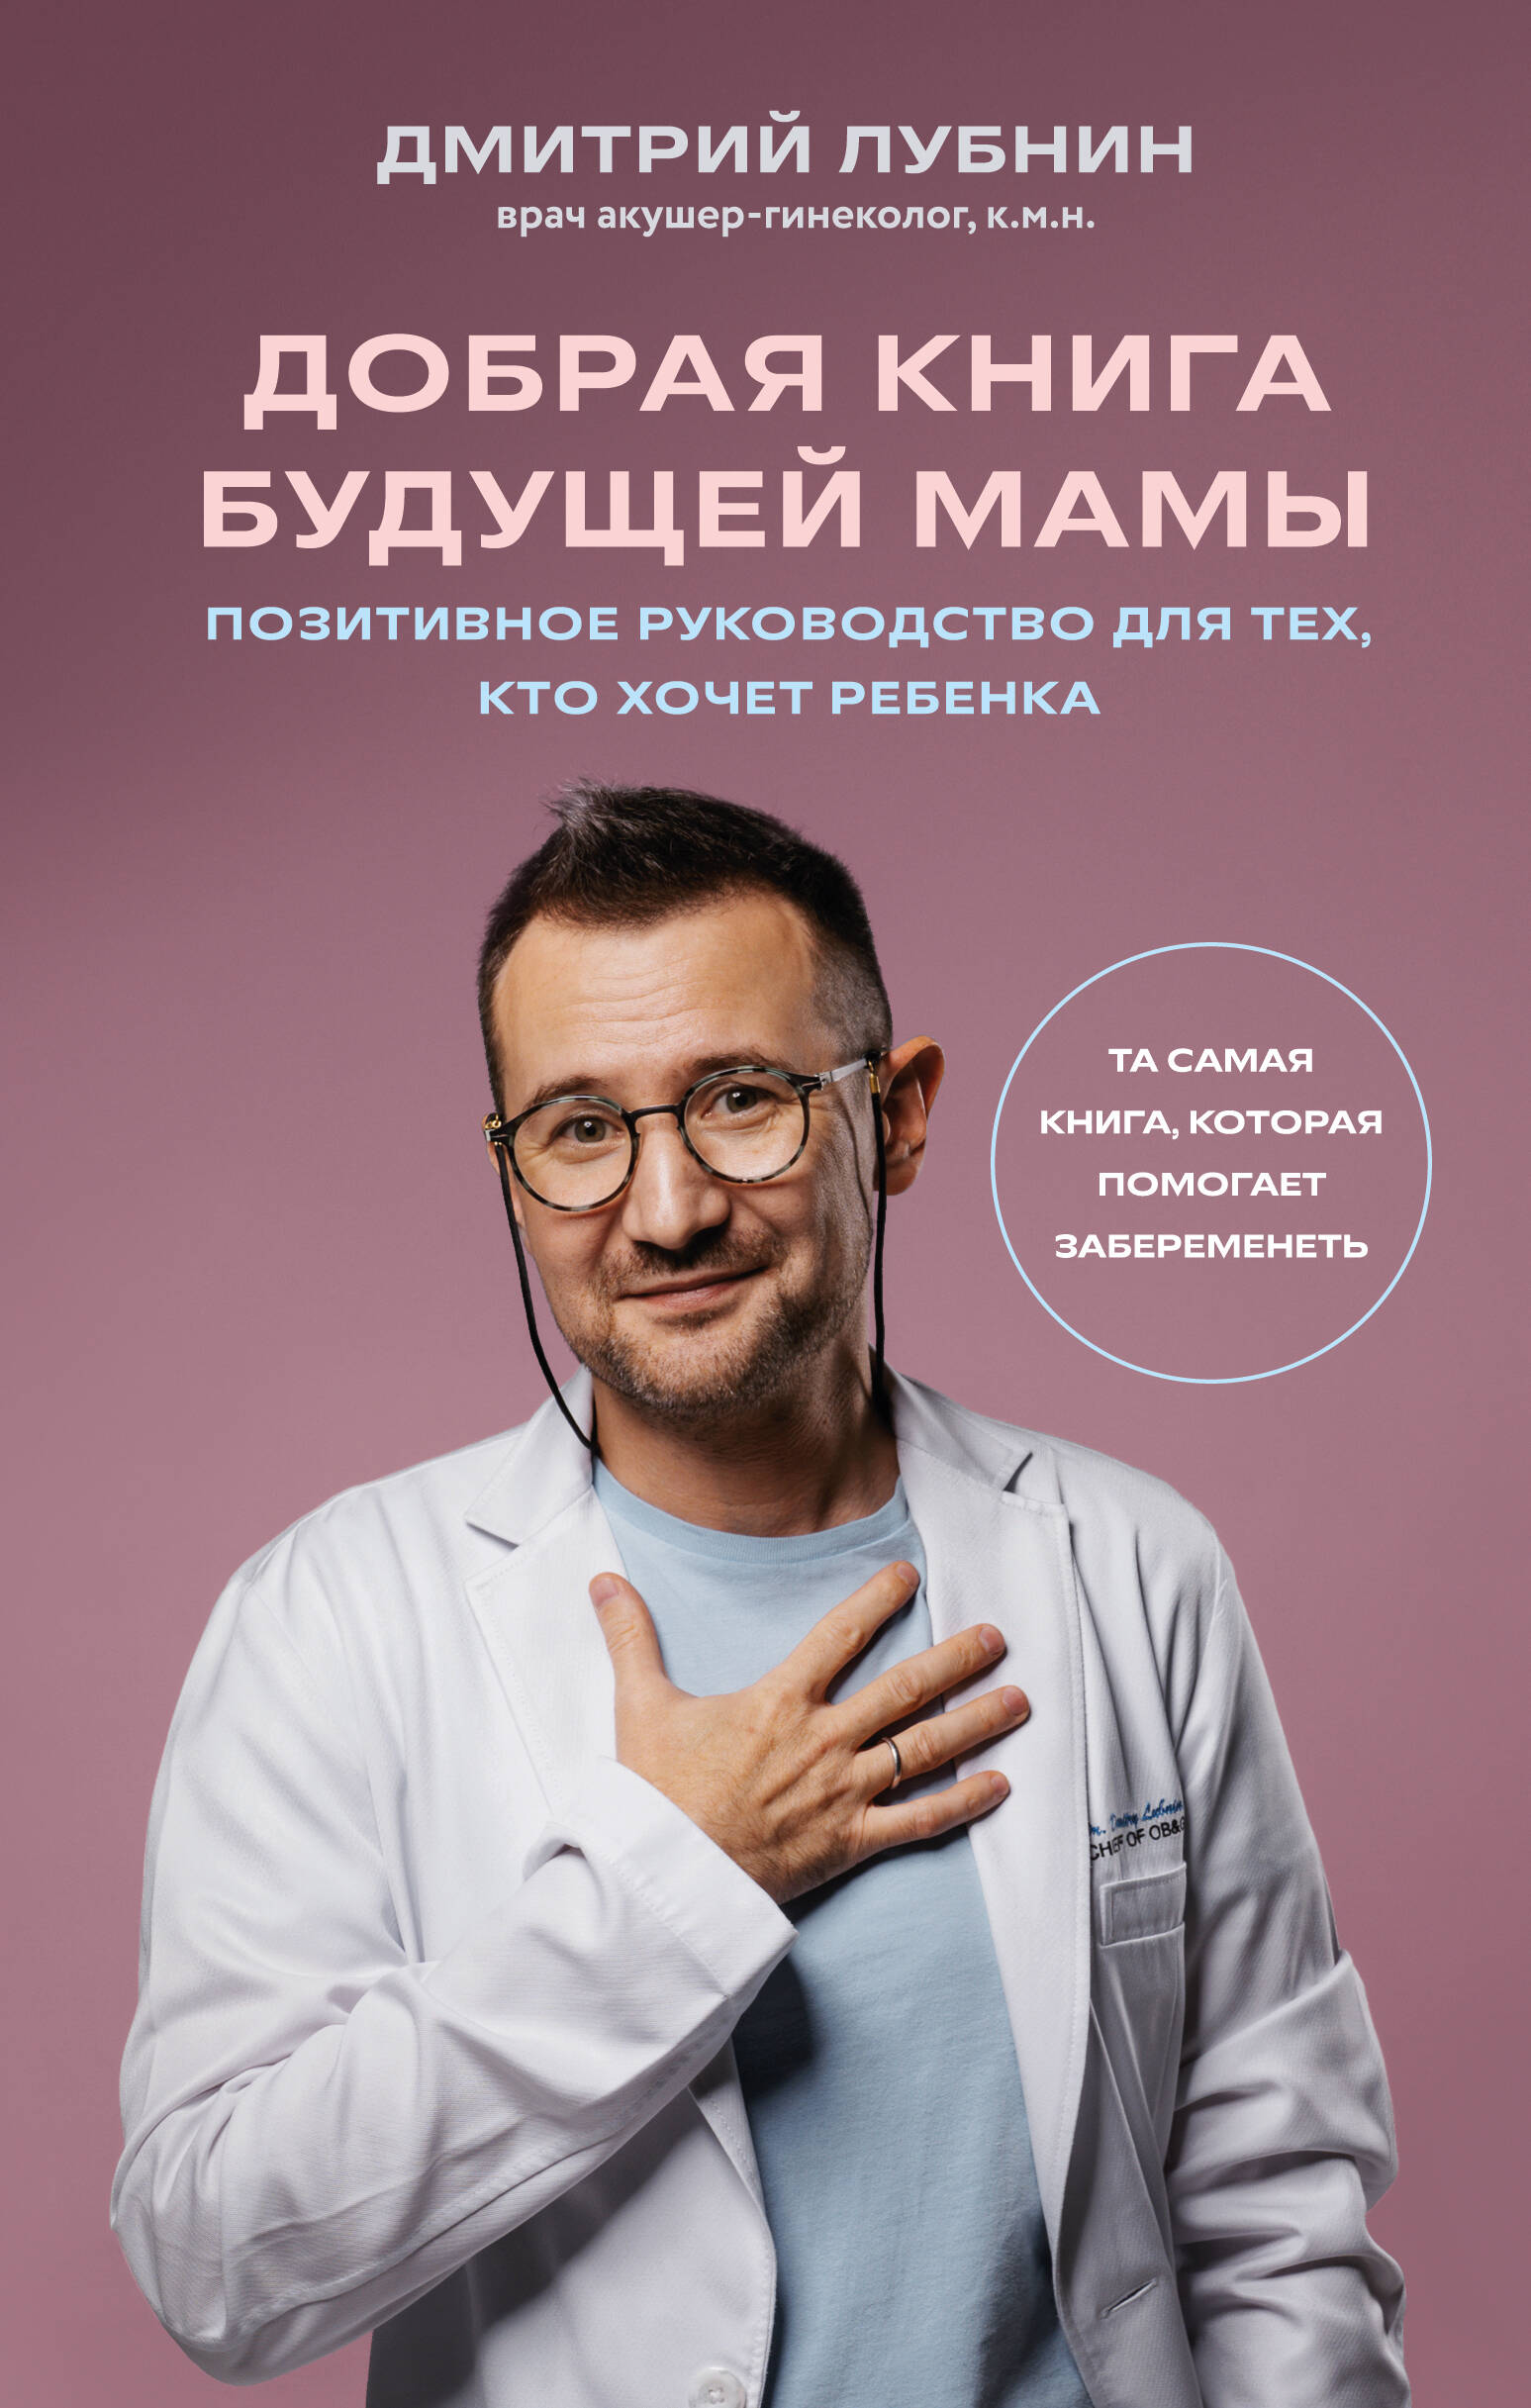 Лубнин Дмитрий Михайлович - Добрая книга будущей мамы. Та самая книга, которая помогает забеременеть